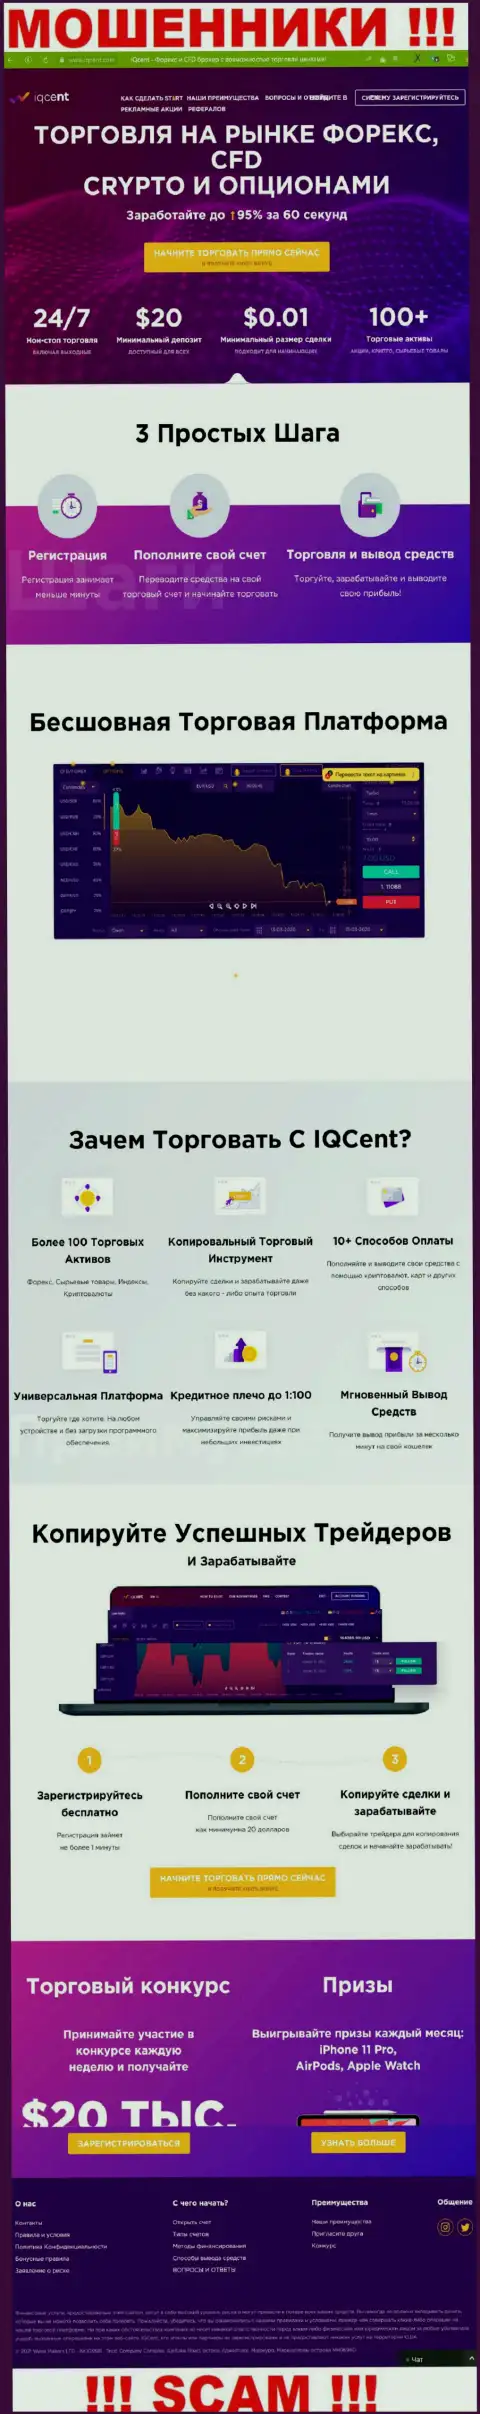 Официальный веб-ресурс кидал IQCent, заполненный информацией для лохов